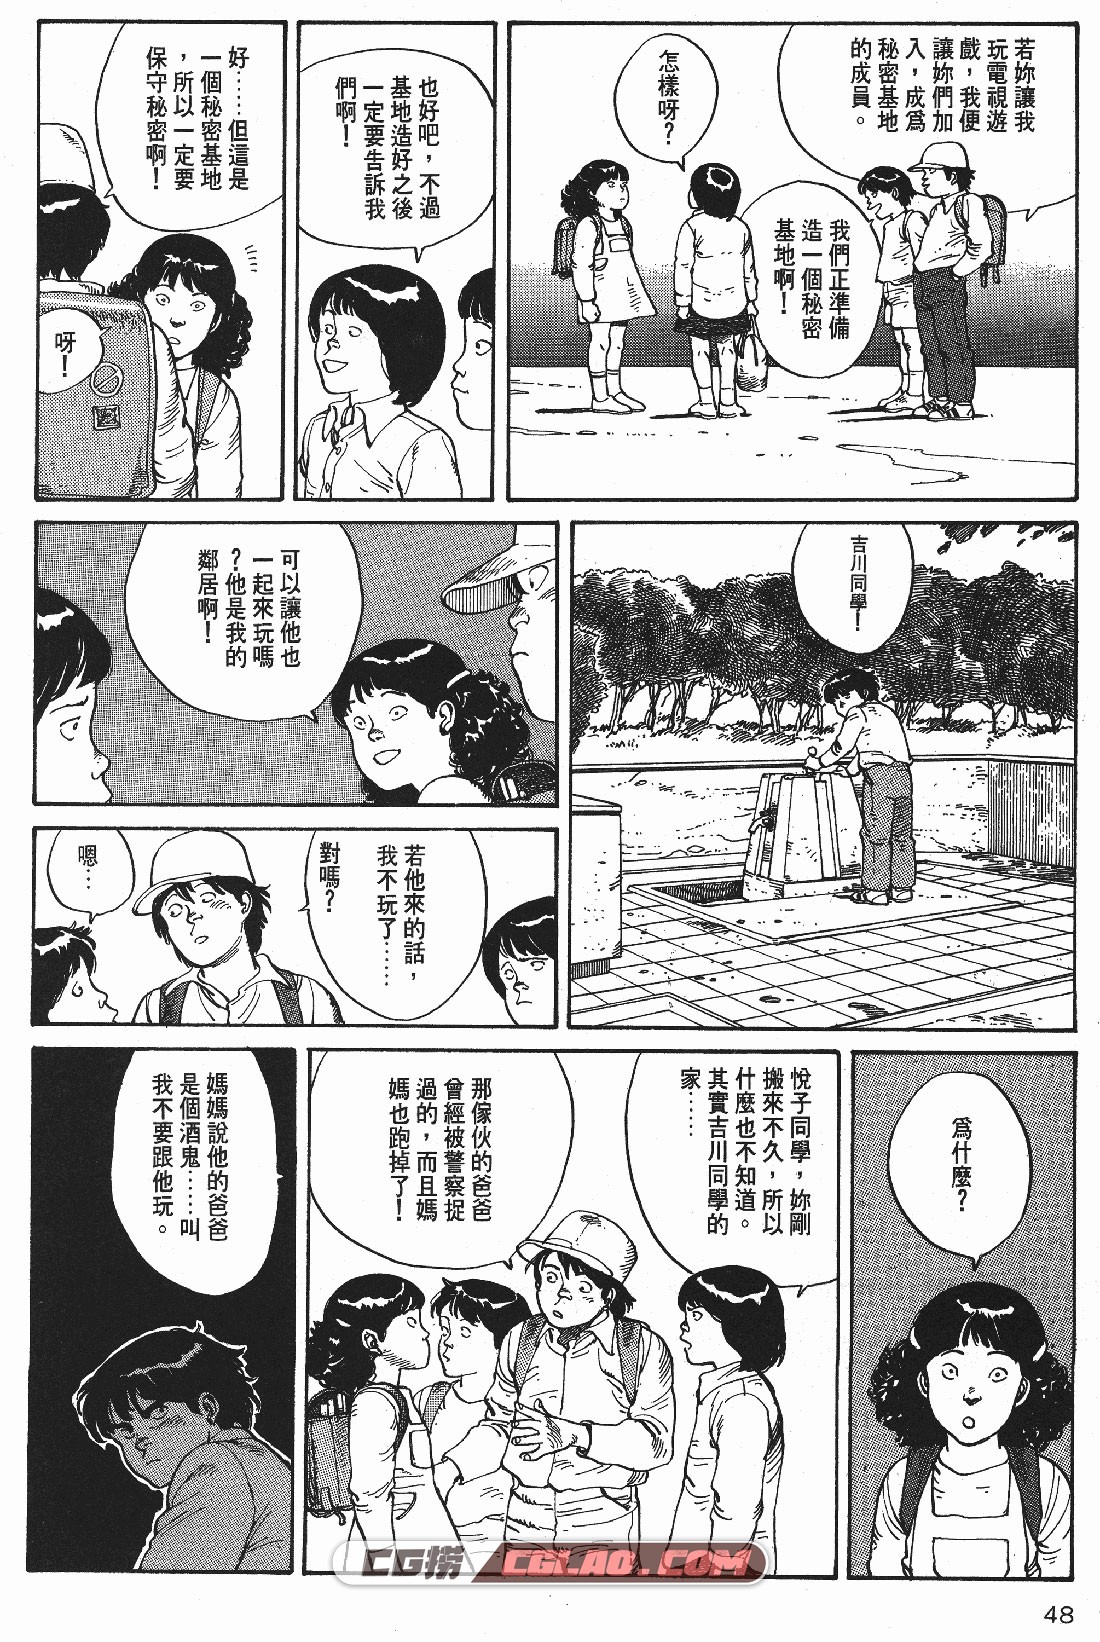 童梦 大友克洋 全一册 日本经典少年漫画百度网盘下载,_TMMT-_0048.jpg